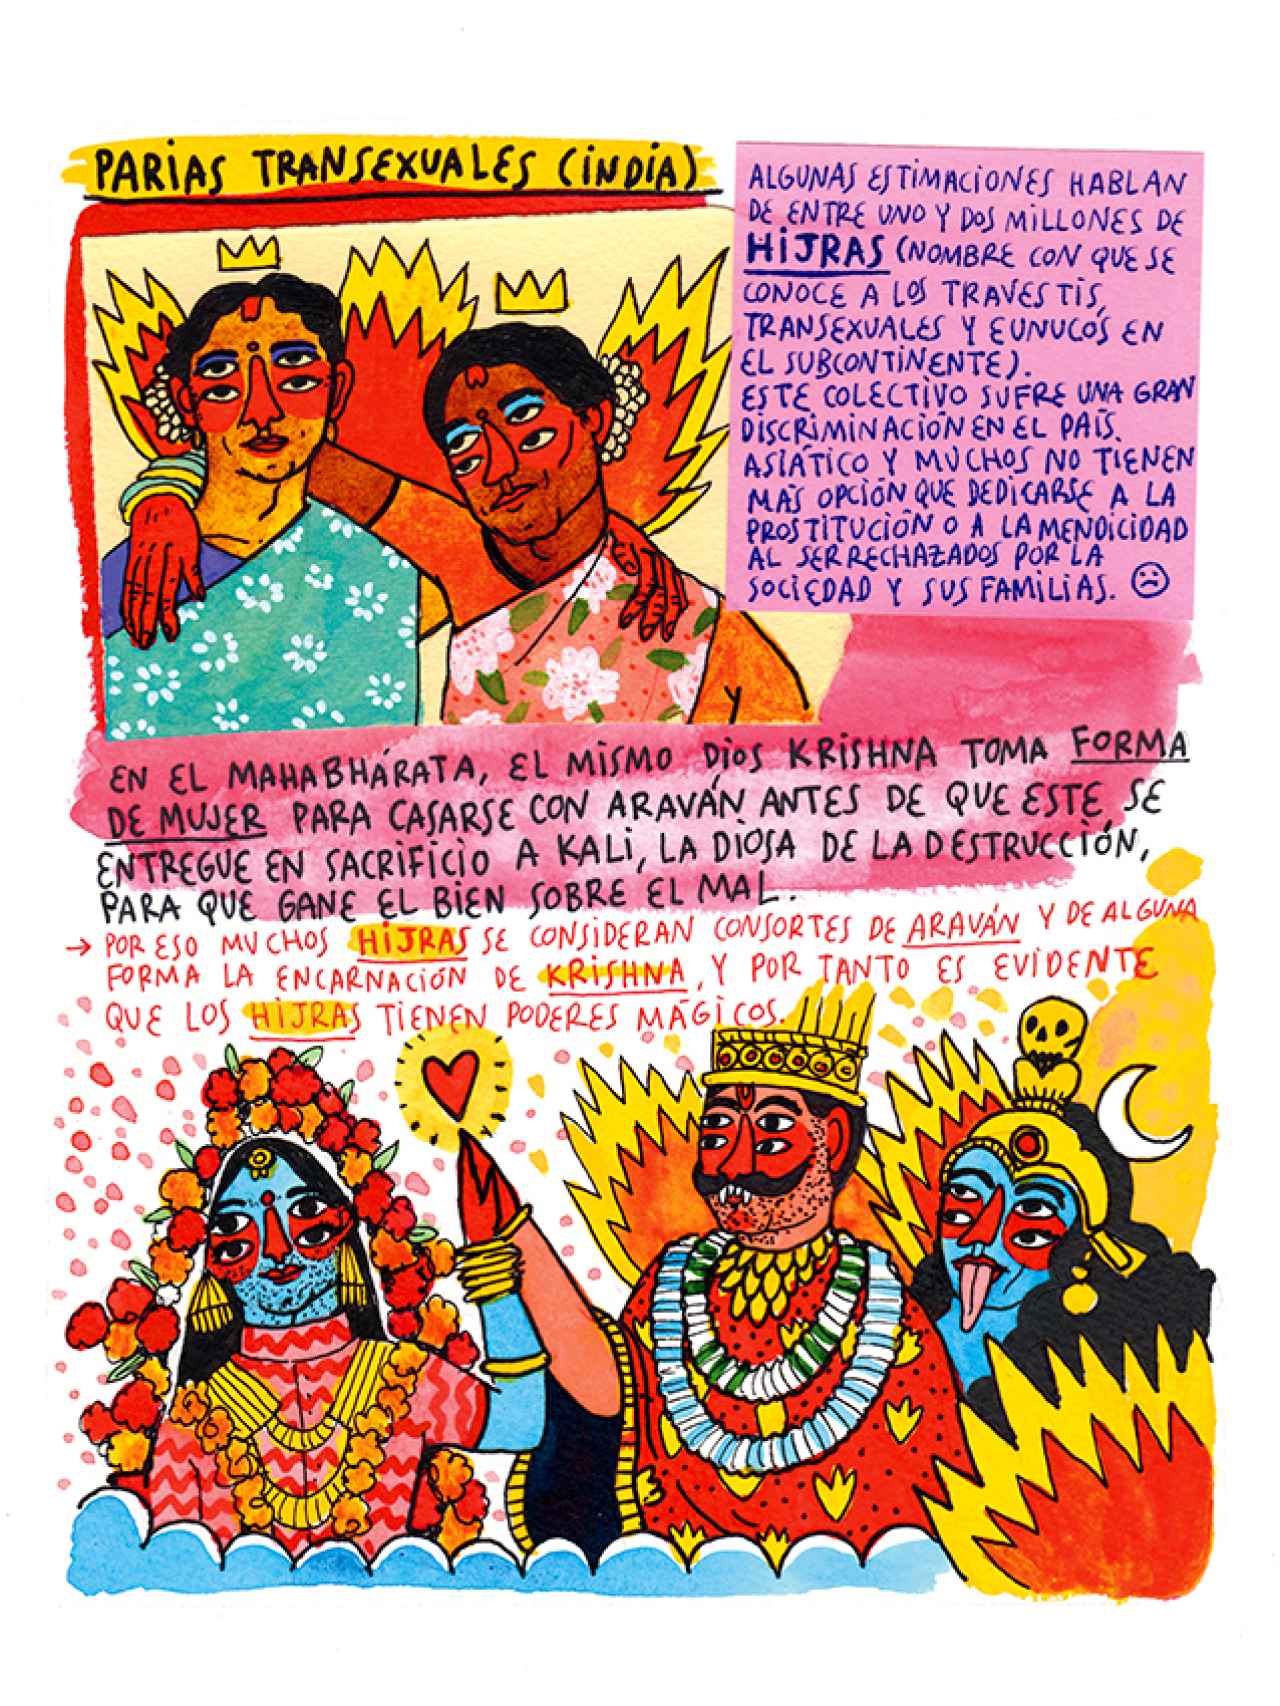 Parias transexuales en la India. Ilustración de Periferias, de Ricardo Cavolo.